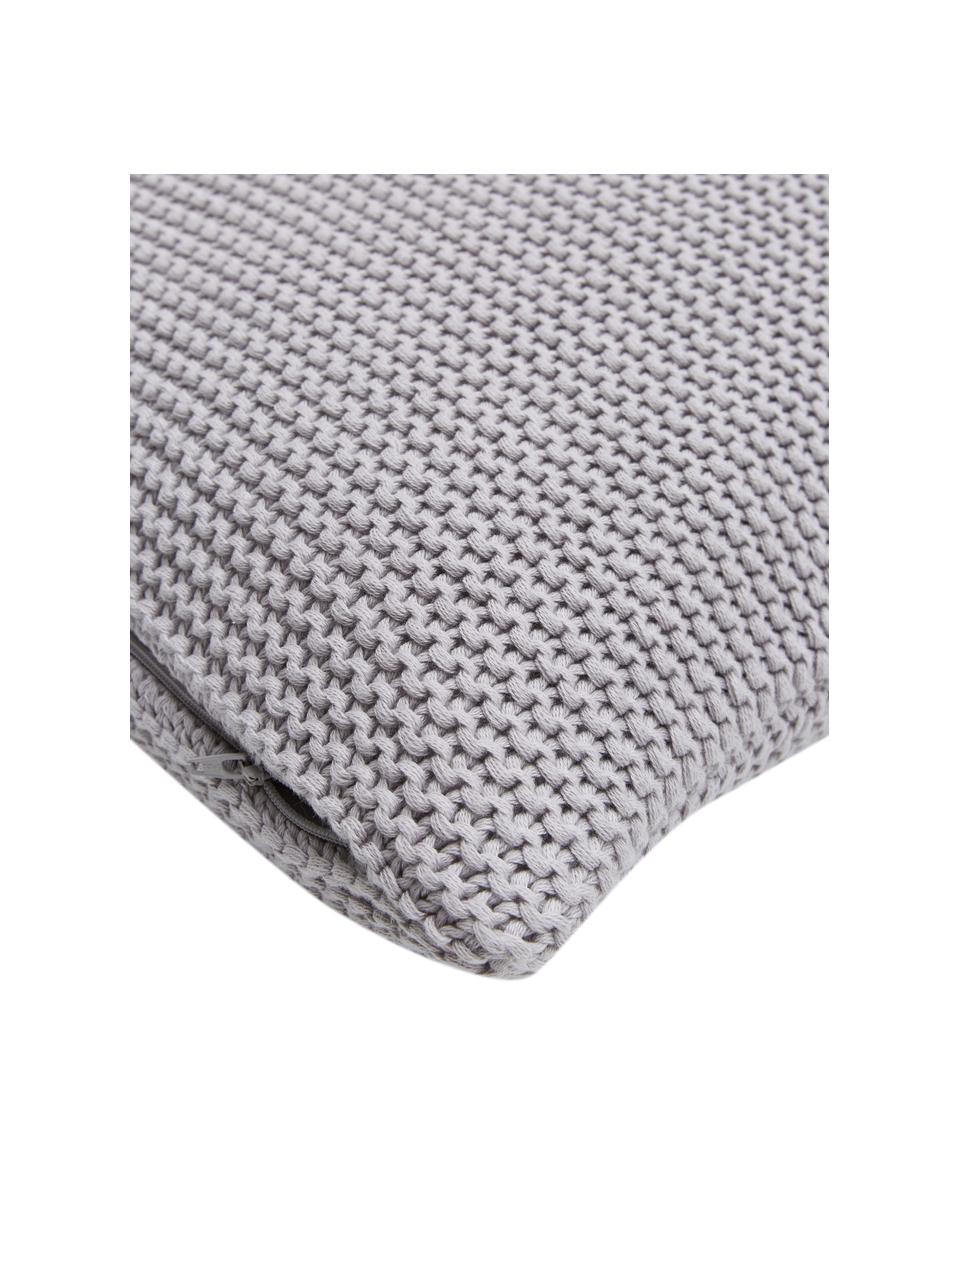 Federa arredo a maglia in cotone organico grigio chiaro Adalyn, 100% cotone organico, certificato GOTS, Grigio chiaro, Larg. 30 x Lung. 50 cm